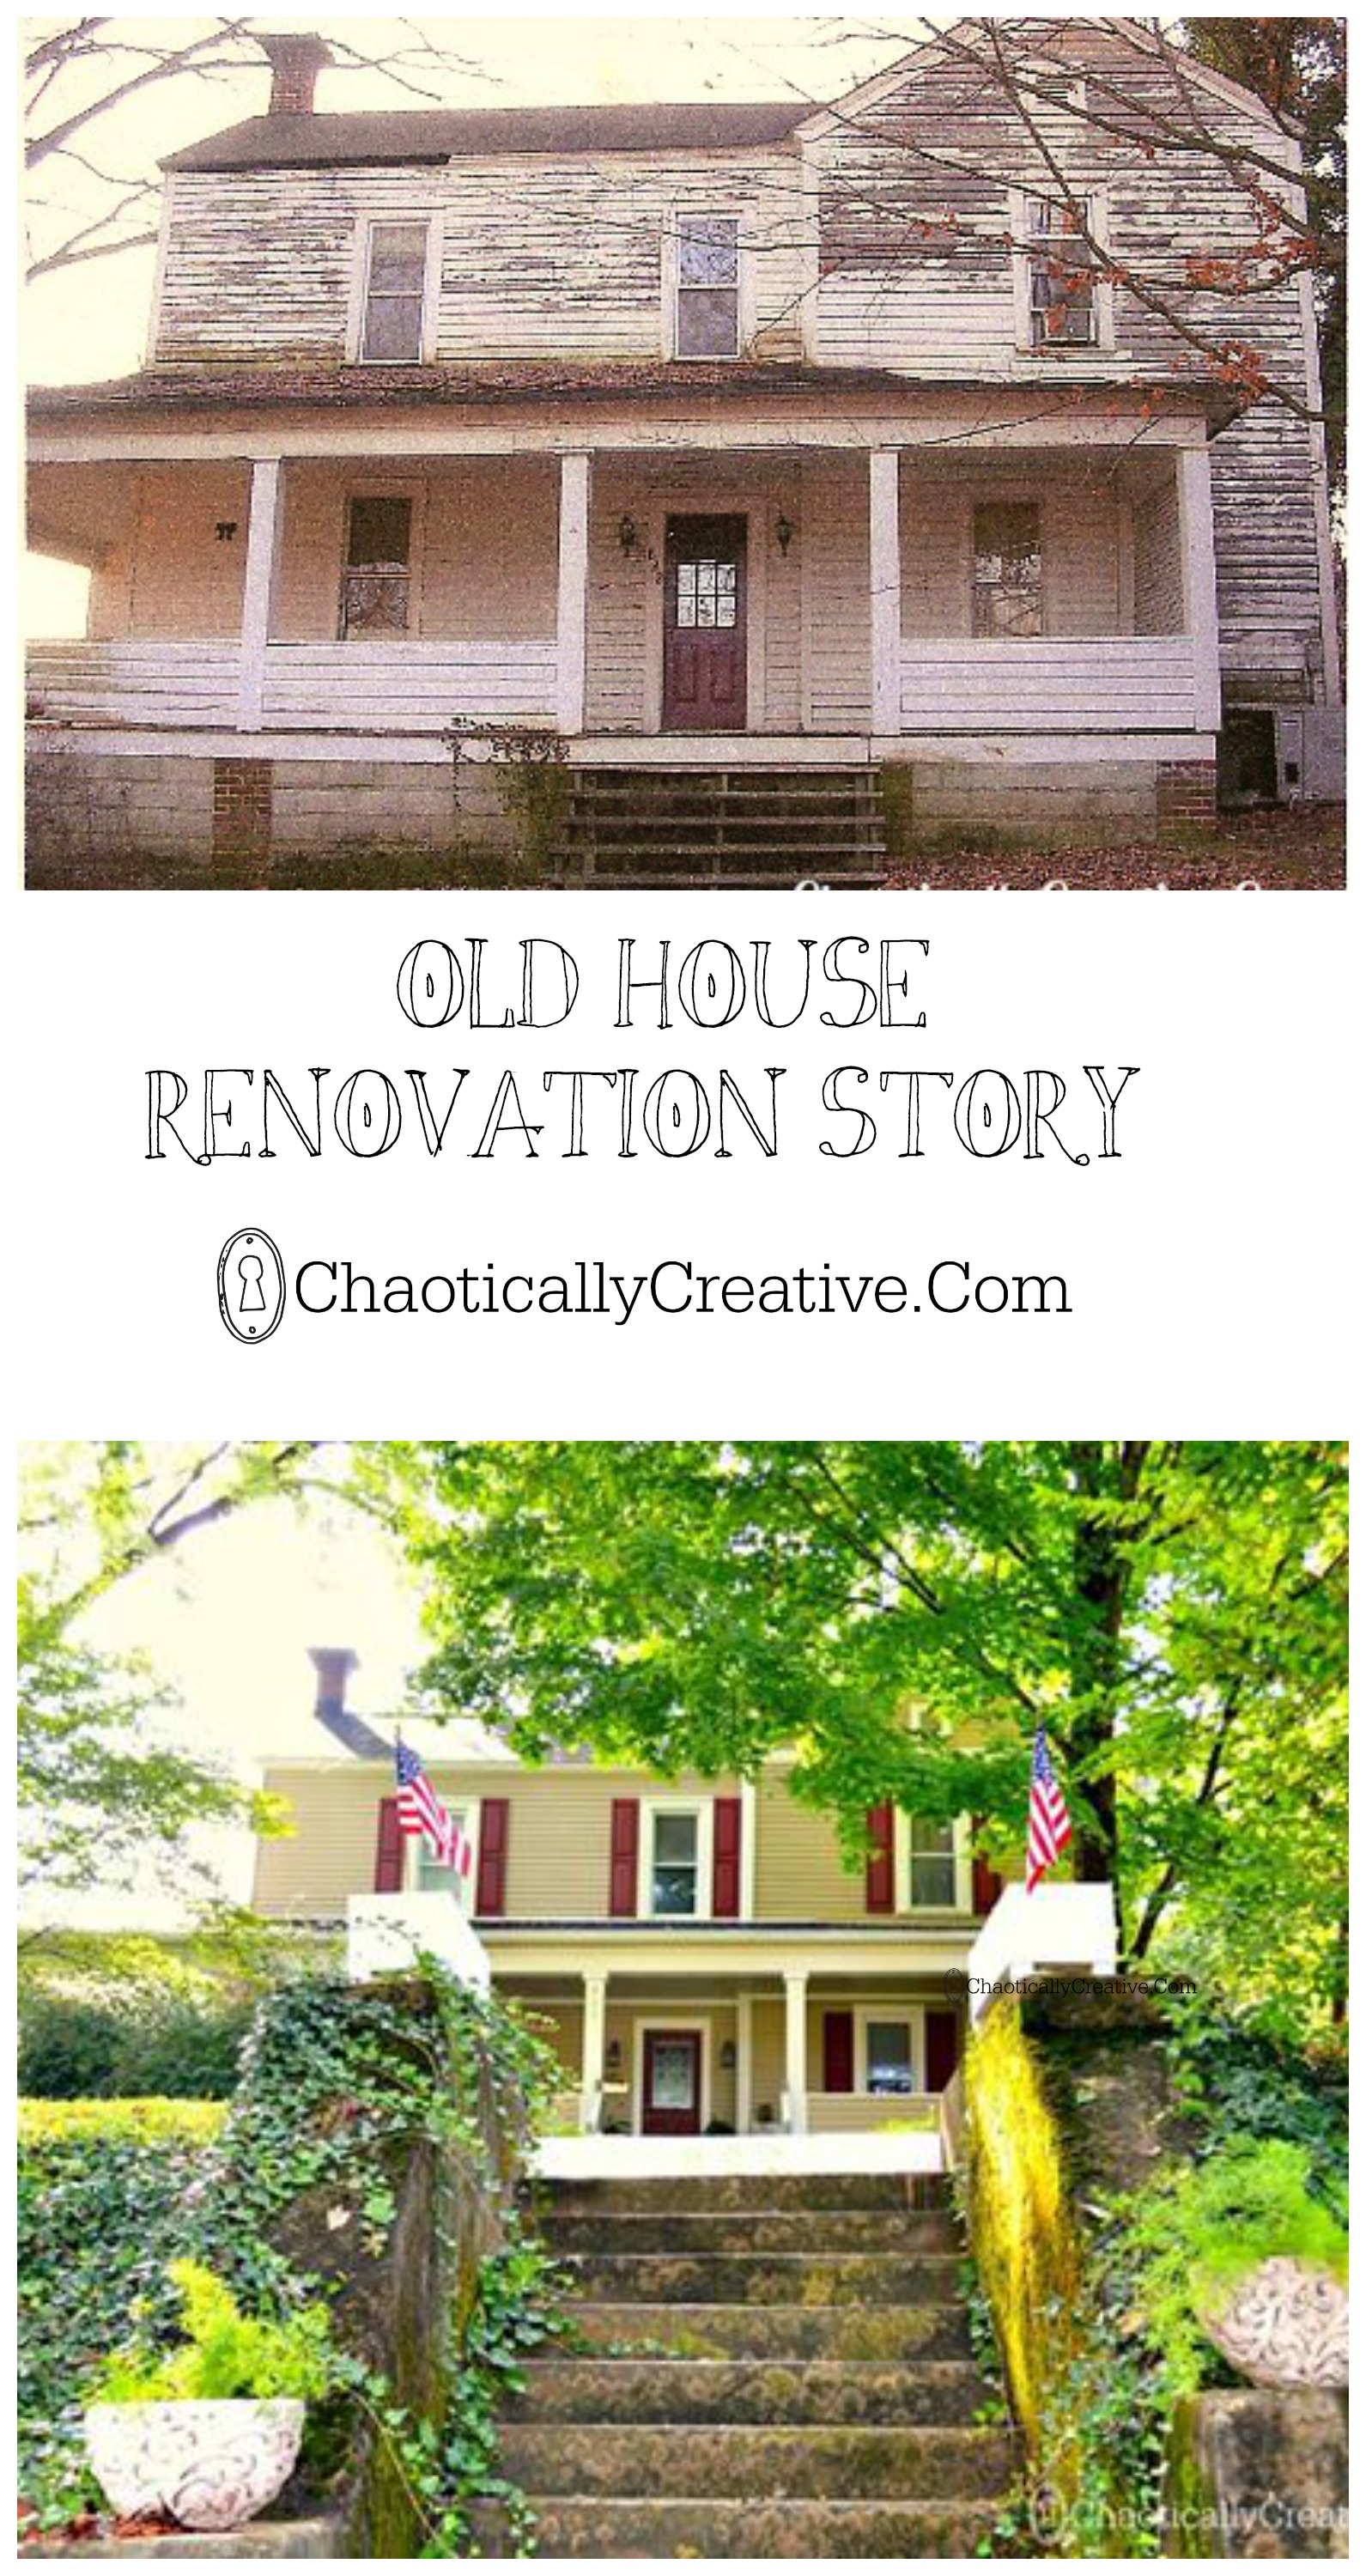 old house renovation story